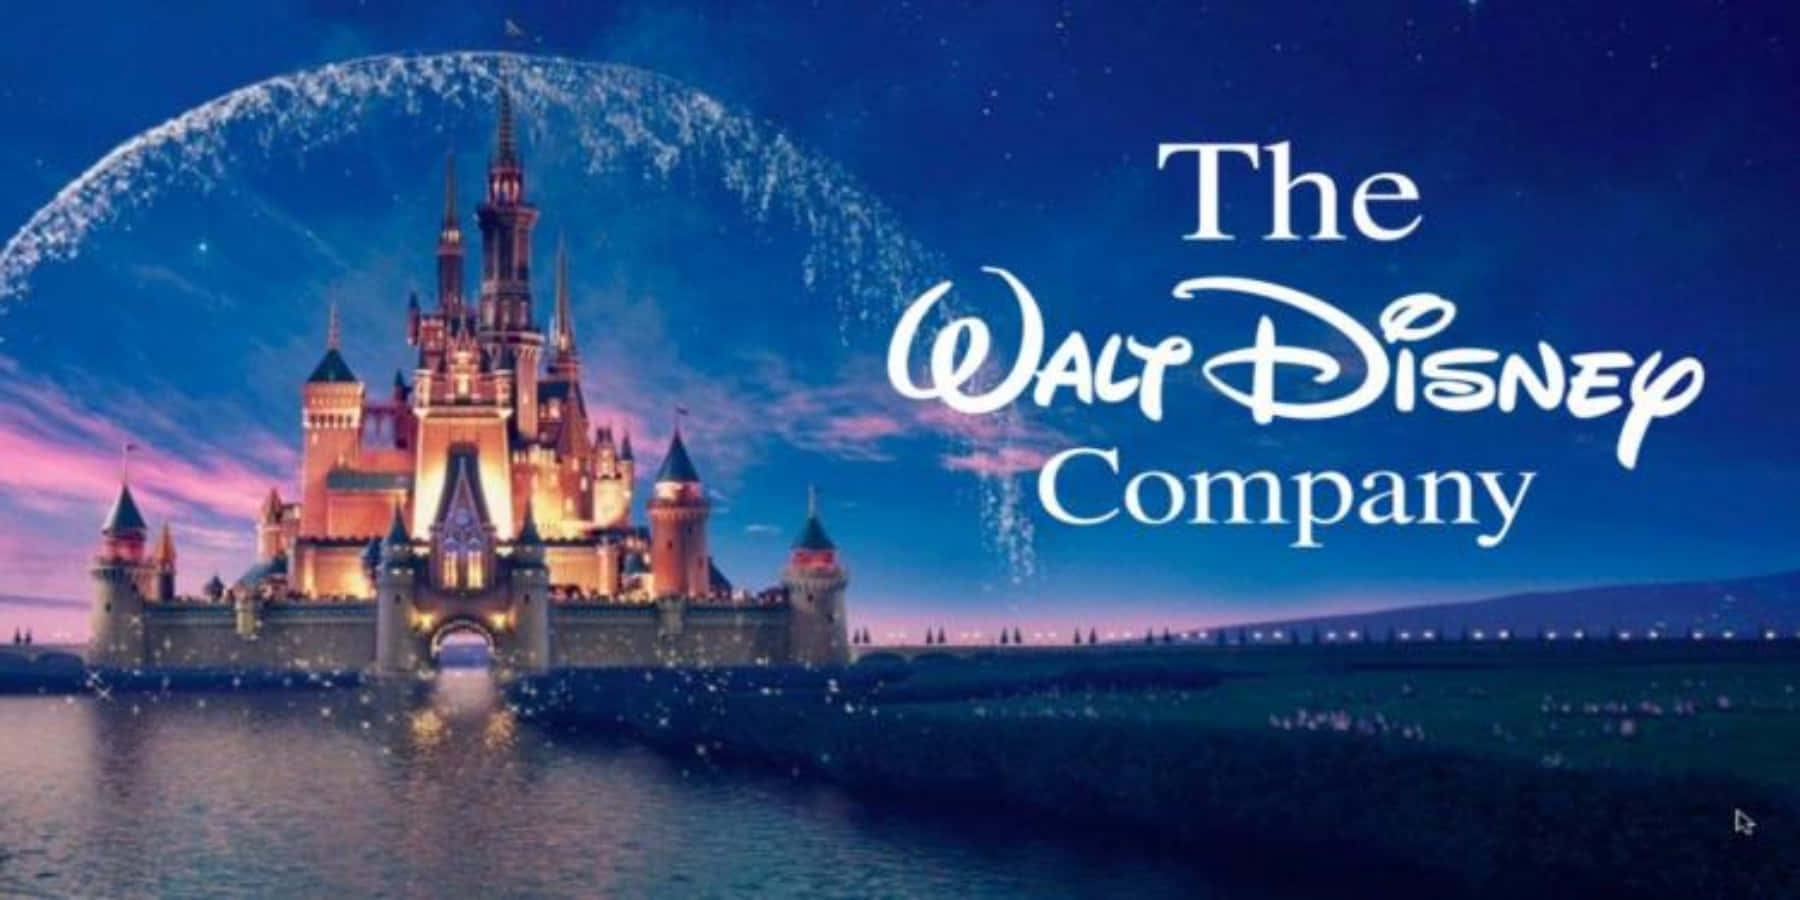 Tapet af Disney-selskabet - Giv dit skrivebord en magisk oplevelse med dette tapet af Disney-selskabet.